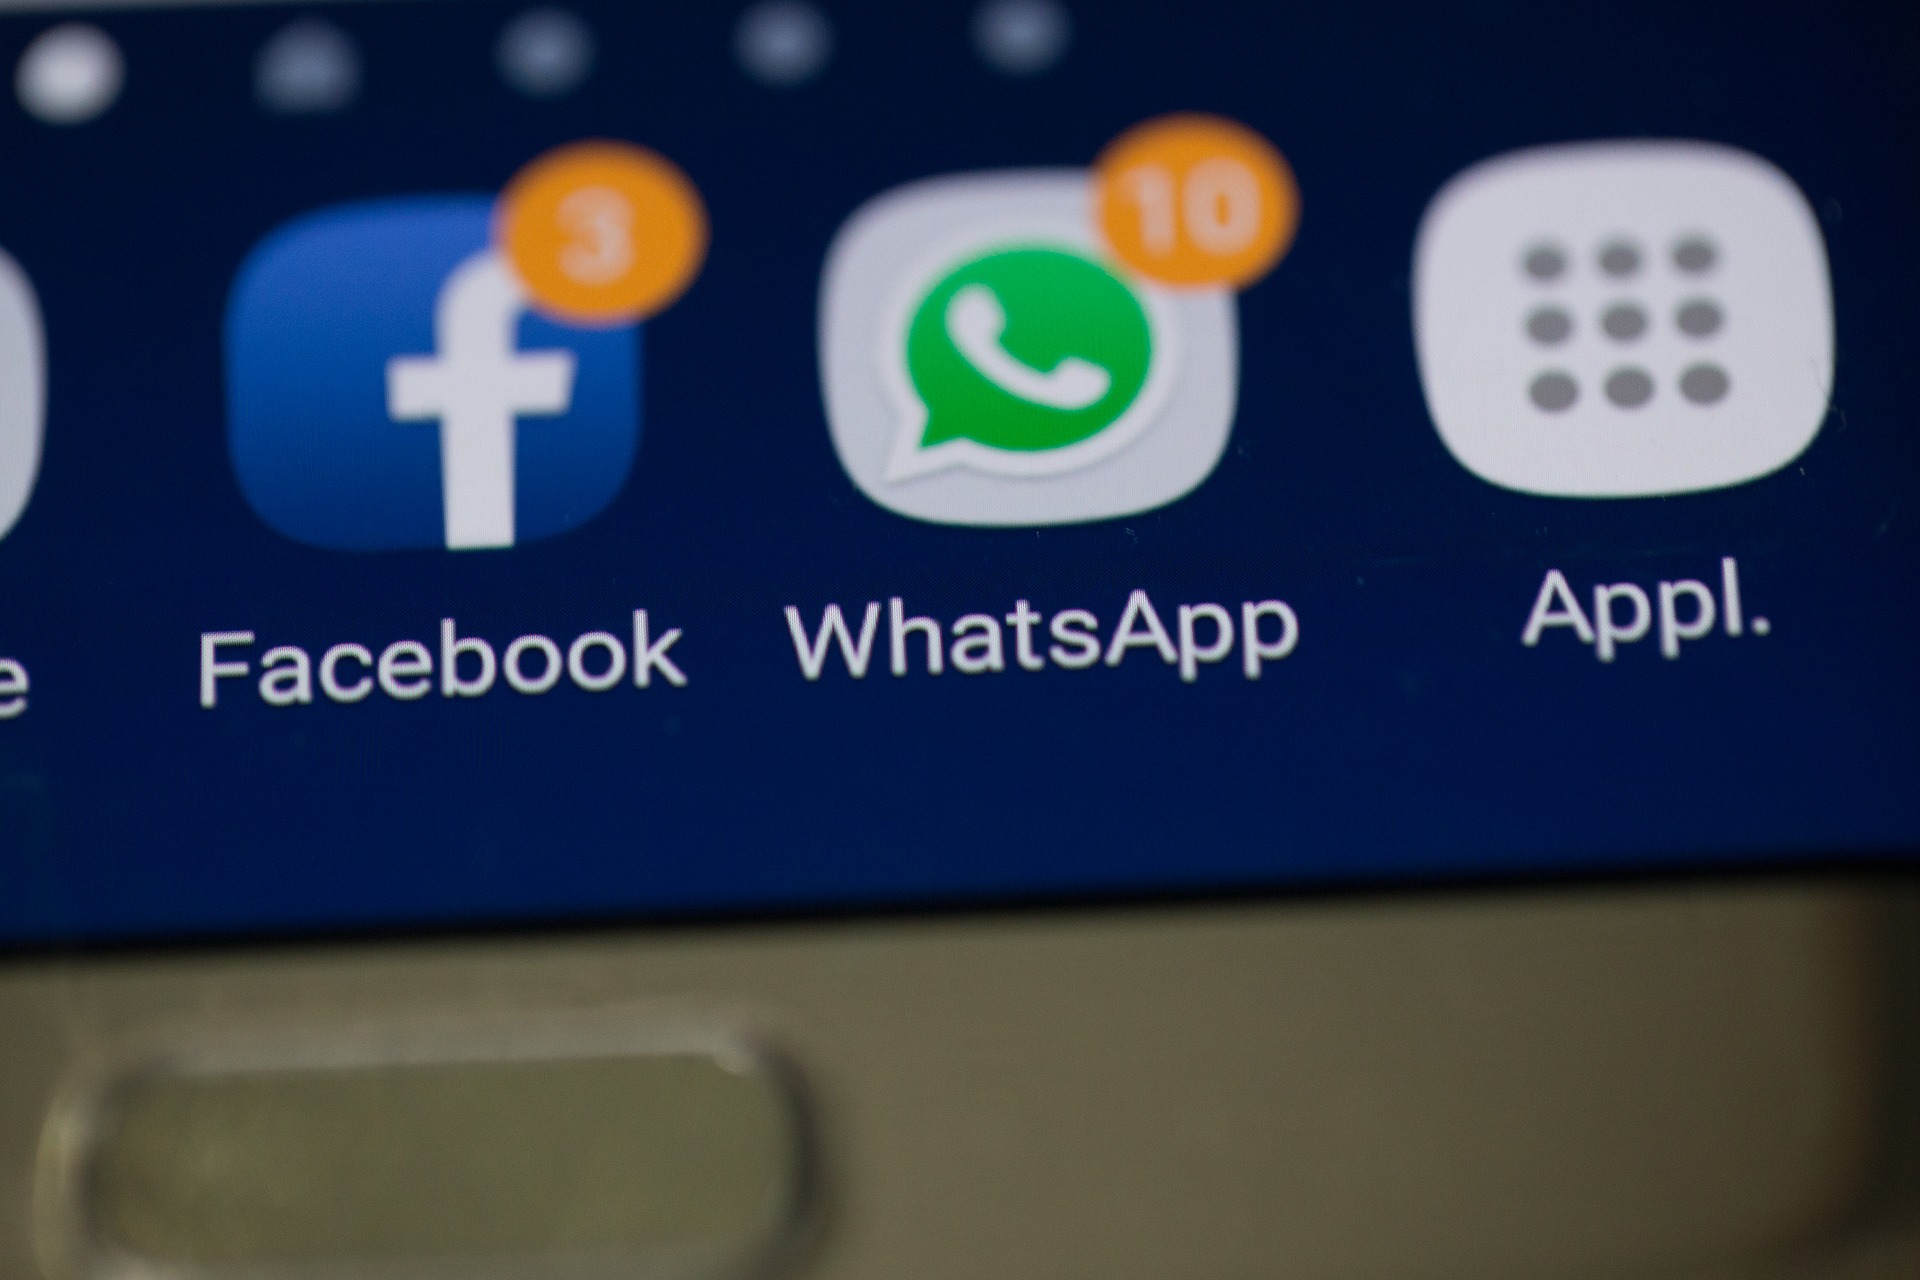 Facebook confirma instabilidade no WhatsApp e Instagram nesta quarta-feira